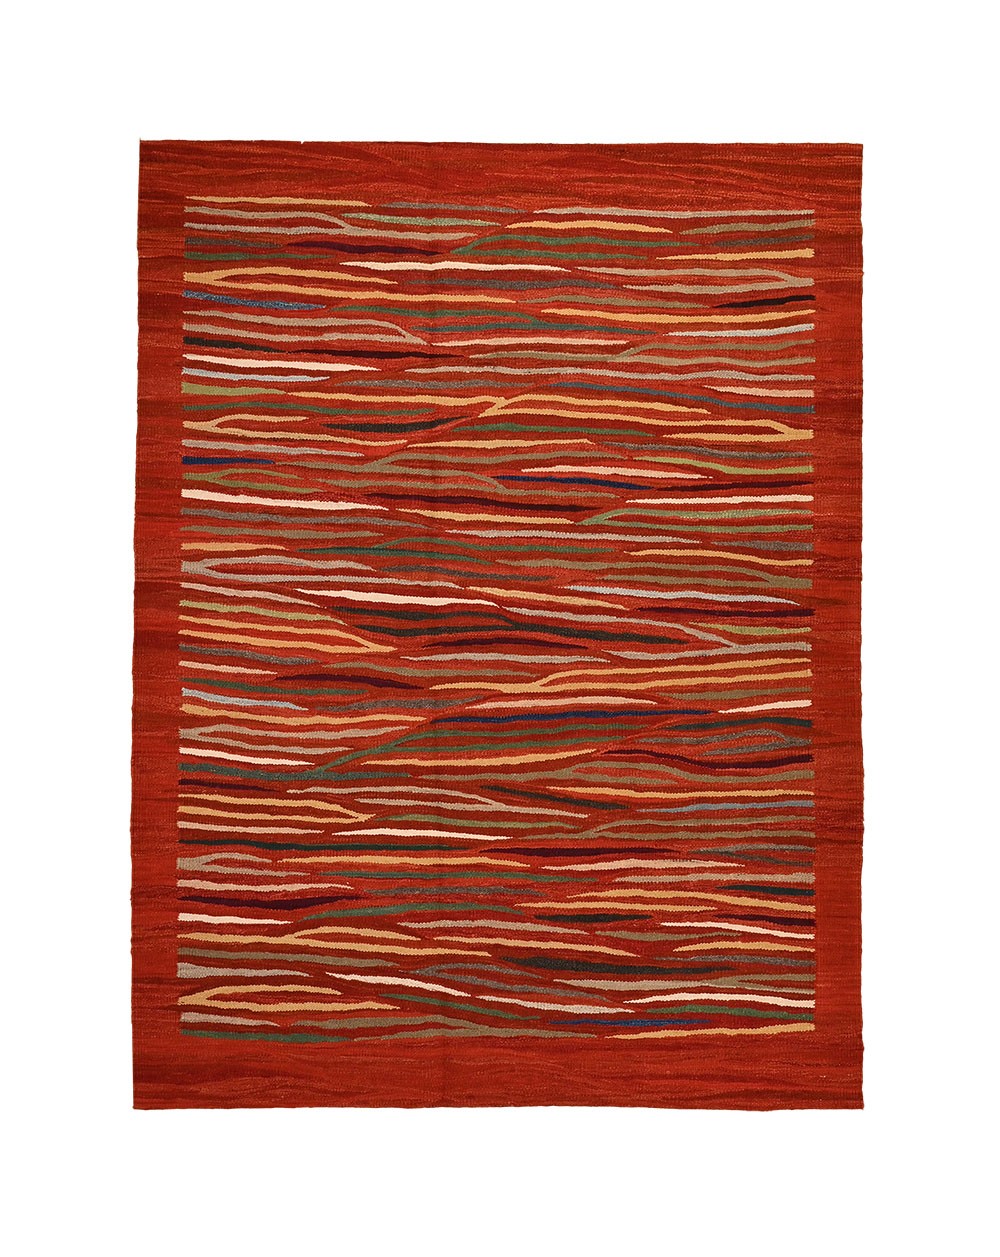 Red carpet Rug in Paris Contemporary rug